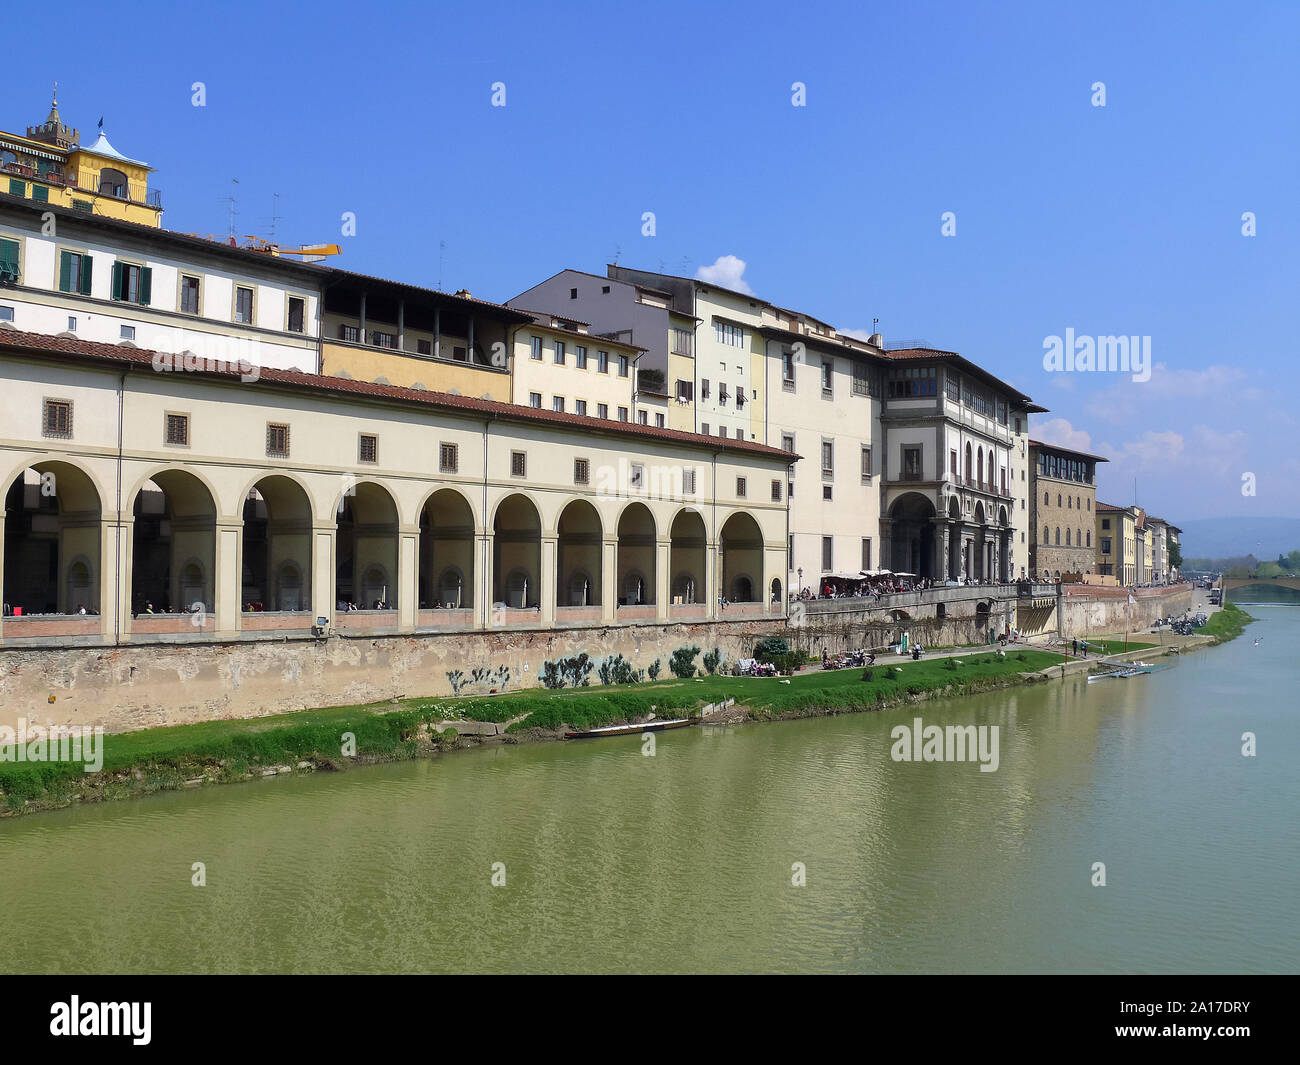 Galleria degli Uffizi, Uffizi Gallery, Florence, Firenze, Tuscany, Italy, Europe Stock Photo